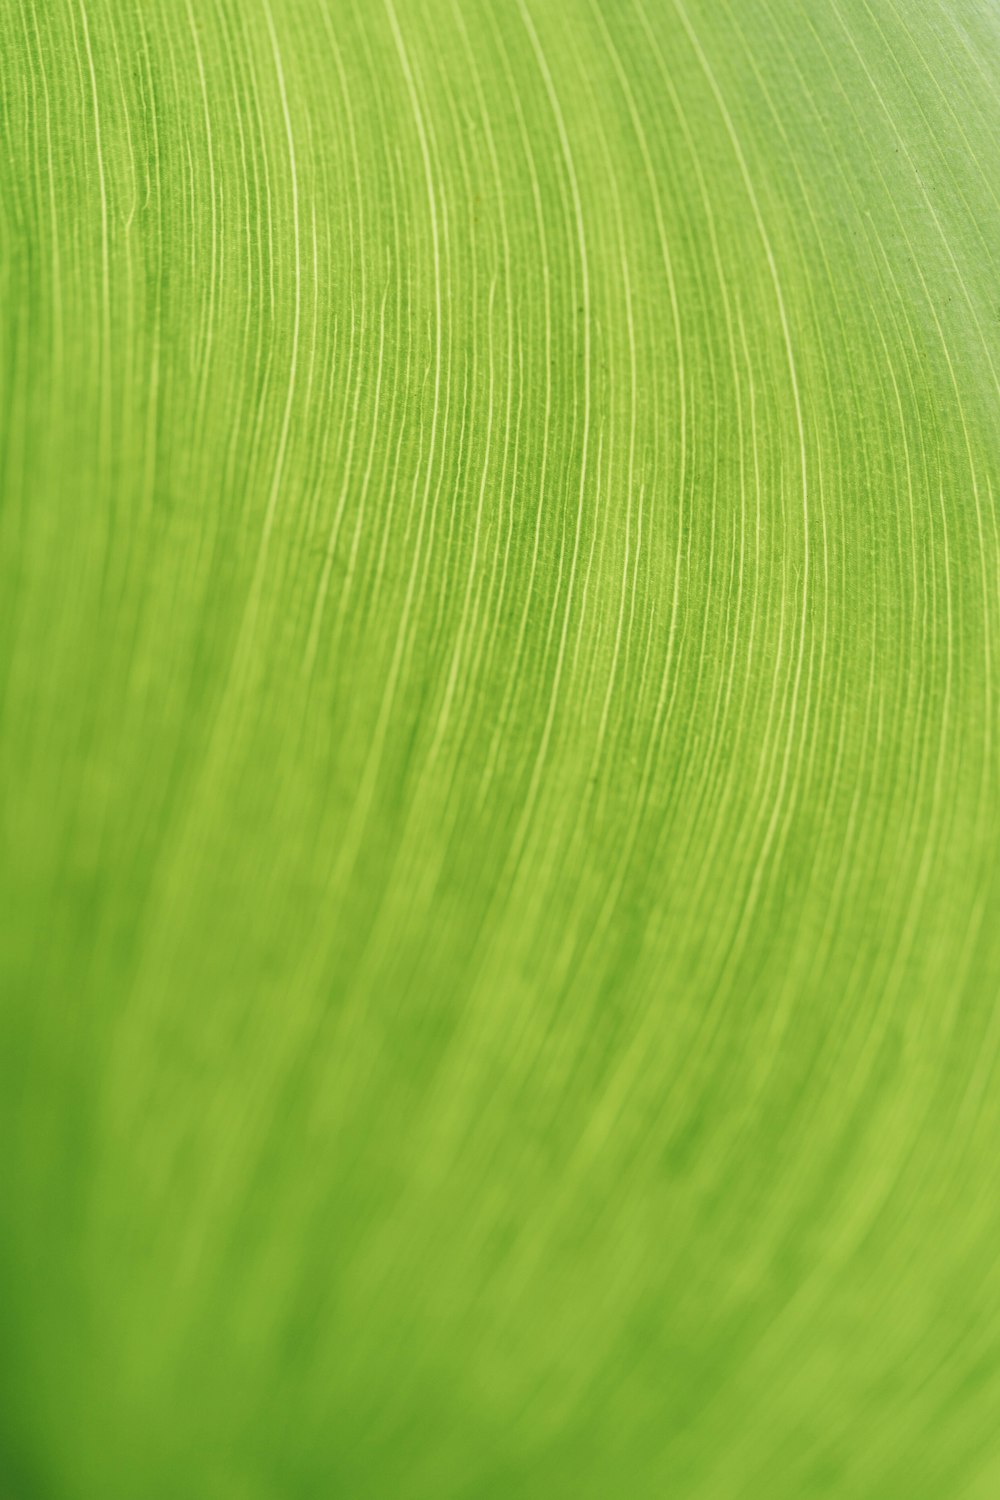 Gros plan d’une texture de feuille verte